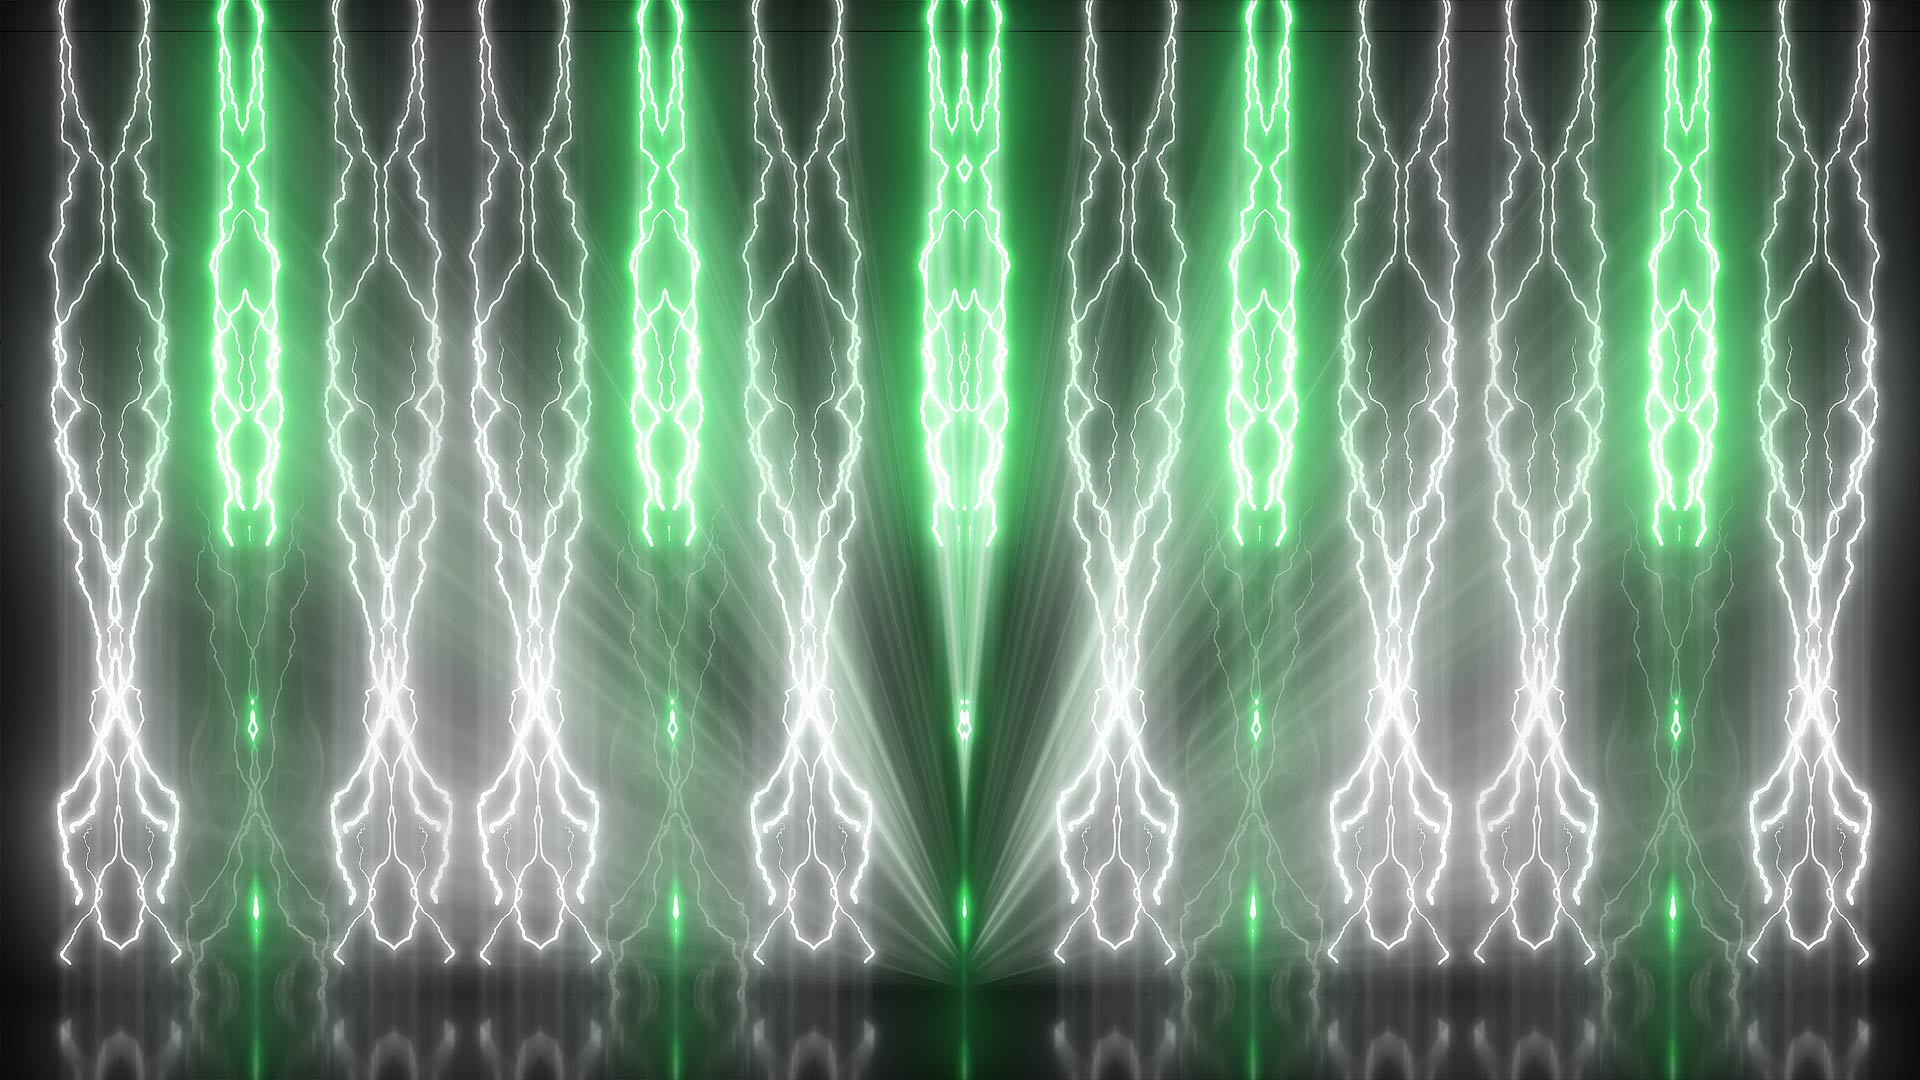 Hình nền Gnosis Lightning sẽ mang đến cho bạn những trải nghiệm tuyệt vời với một hình ảnh đầy sức mạnh và sự bùng nổ. Thiết kế tinh tế cùng độ phân giải cao sẽ khiến cho bất kỳ ai cũng phải trầm trồ và xao xuyến.